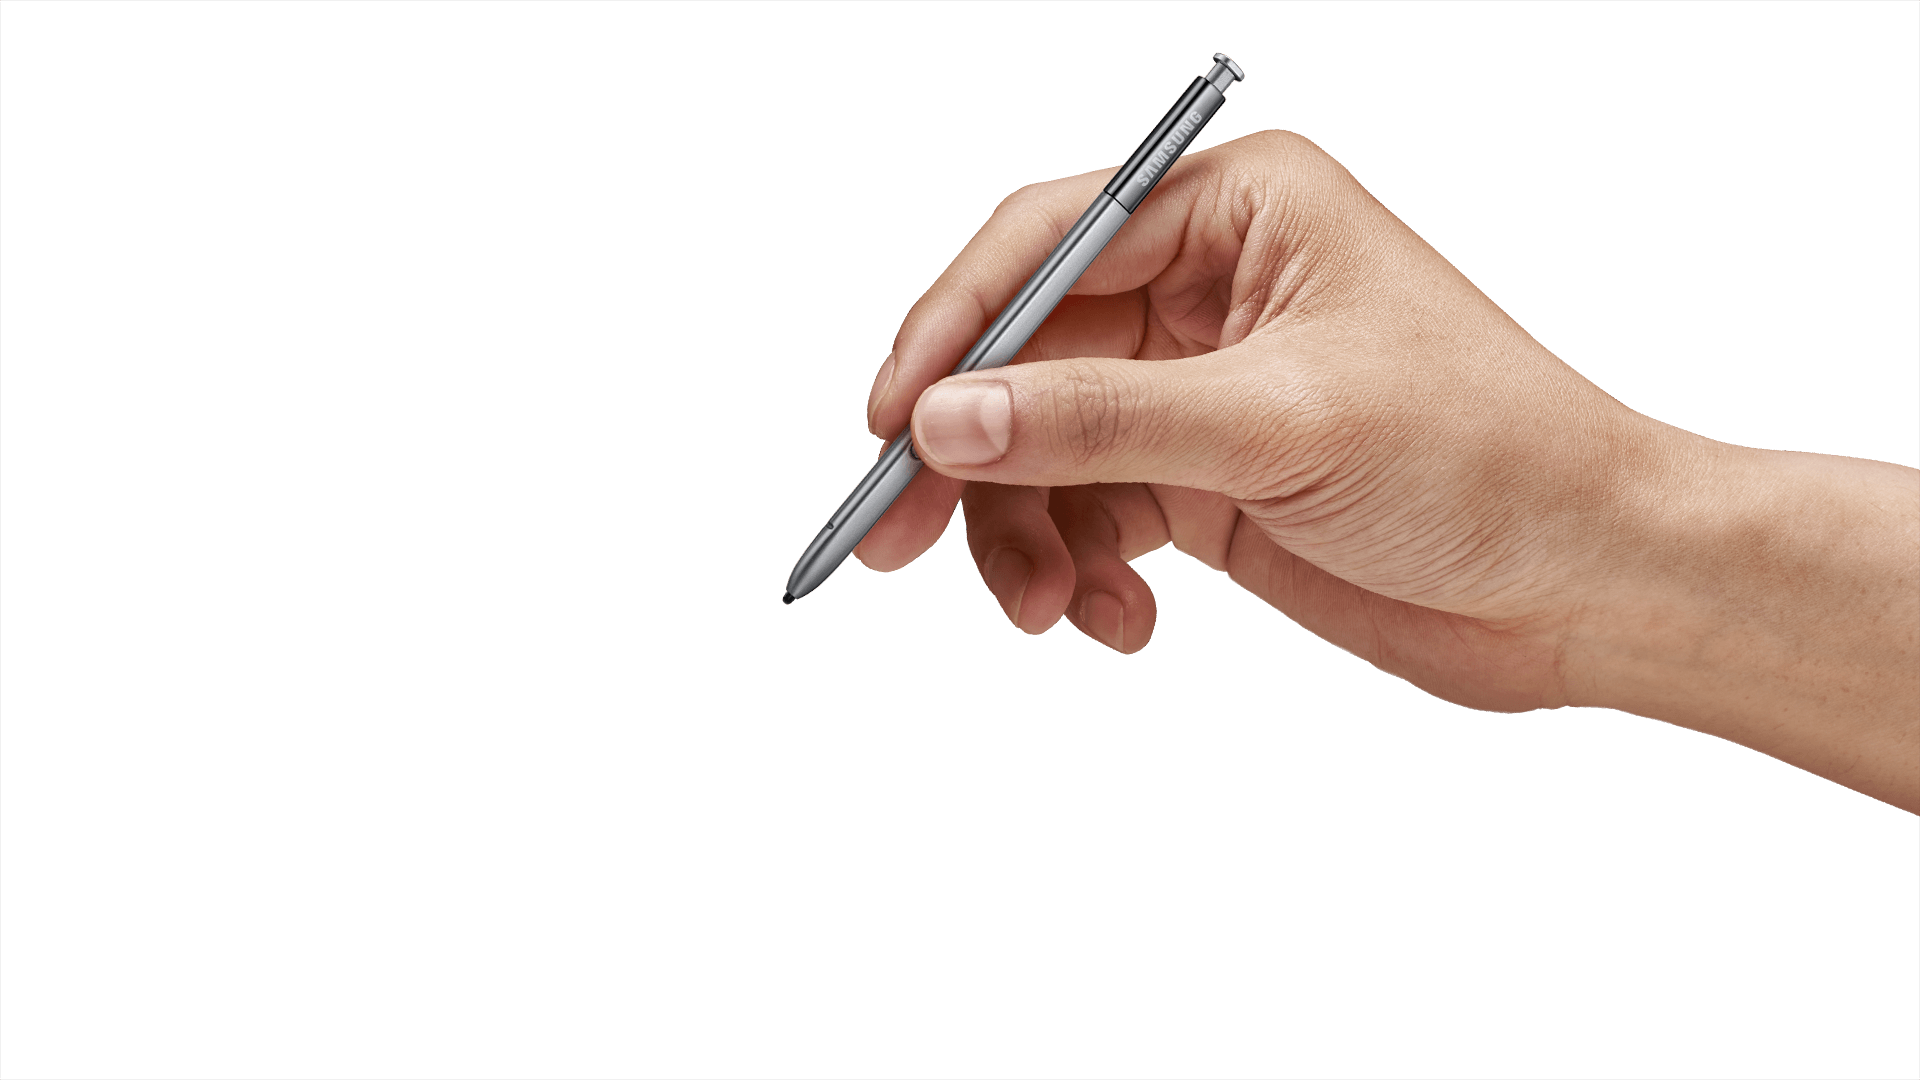 Take a pen. Рука с ручкой. Рука с авторучкой. Руки карандашом. Рука с ручкой на прозрачном фоне.